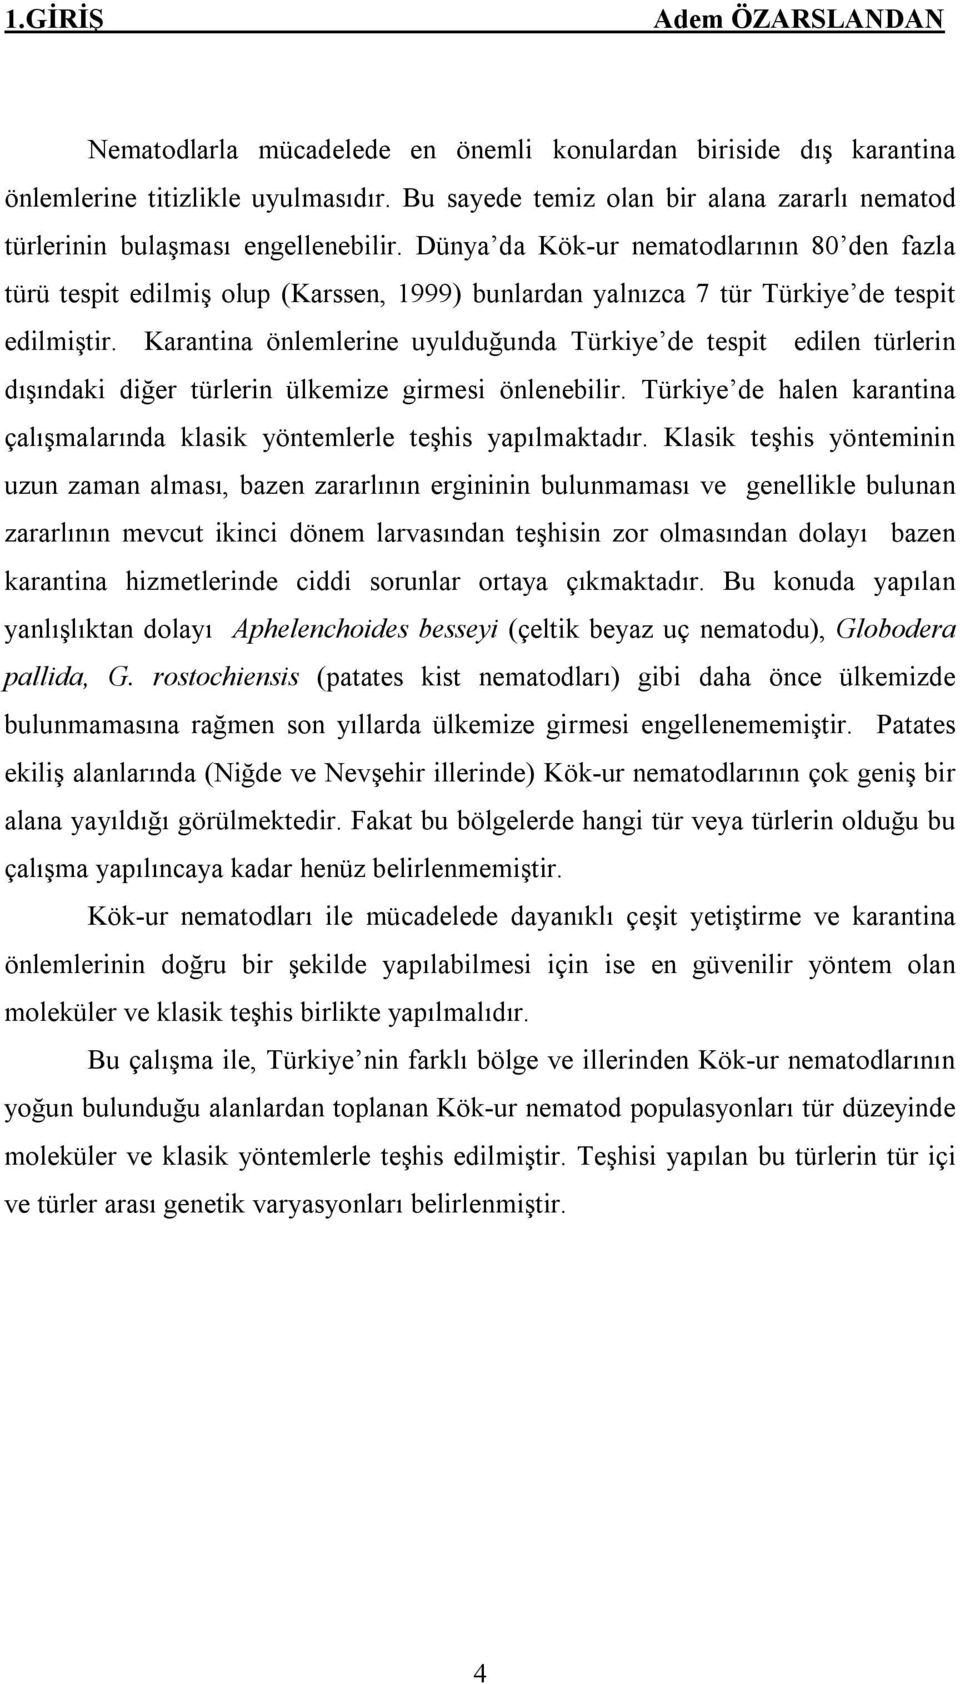 Dünya da Kök-ur nematodlarının 80 den fazla türü tespit edilmiş olup (Karssen, 1999) bunlardan yalnızca 7 tür Türkiye de tespit edilmiştir.